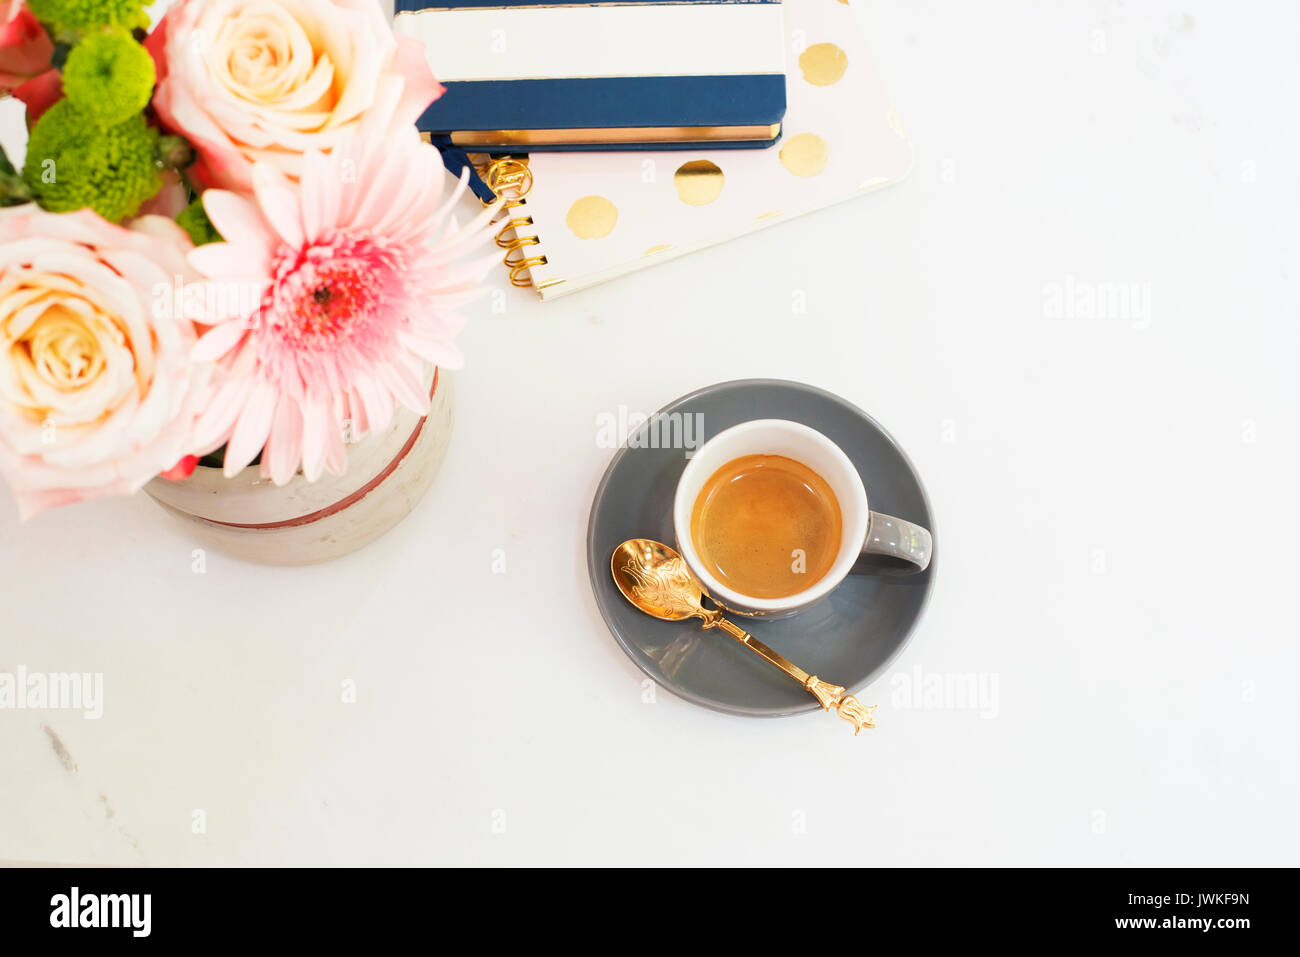 Concept de poste de travail féminin dans télévision jeter style avec du café, des fleurs, des blocs-notes sur fond de marbre blanc. Vue de dessus, clair, rose et or Banque D'Images